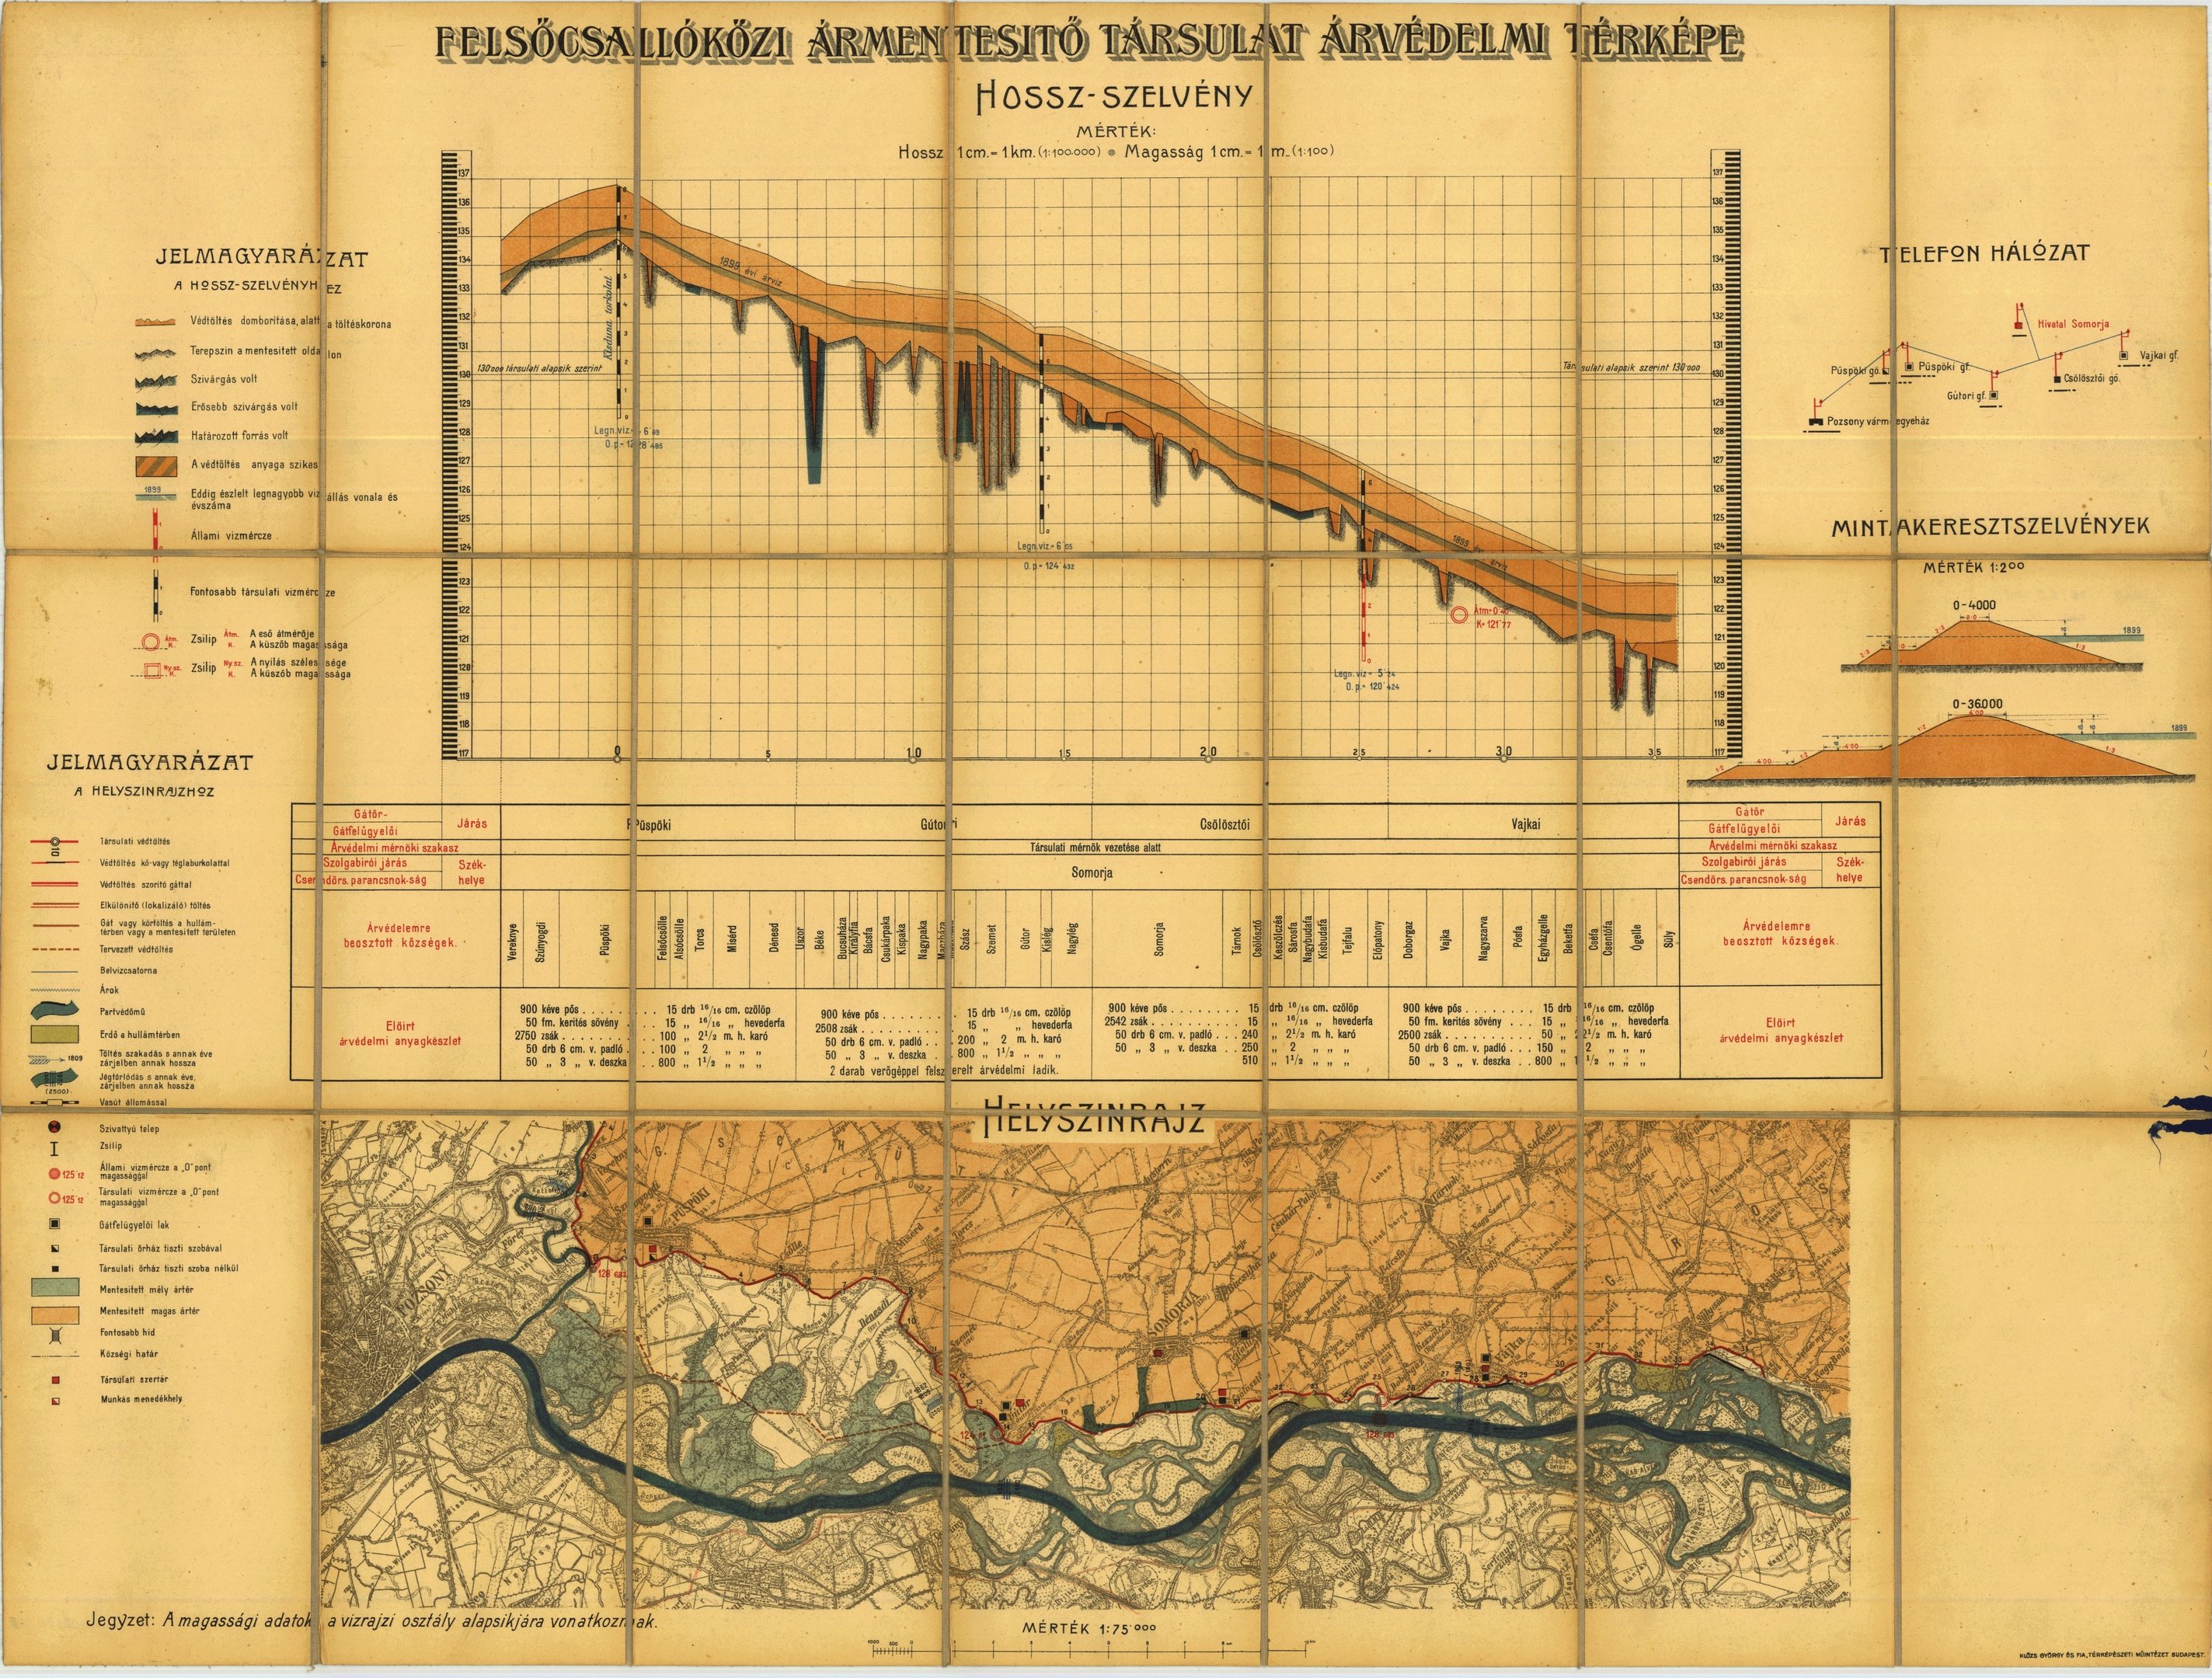 A Felsőcsallóközi Ármentesítő Társulat árvédelmi térképe (Magyar Környezetvédelmi és Vízügyi Múzeum - Duna Múzeum CC BY-NC-SA)